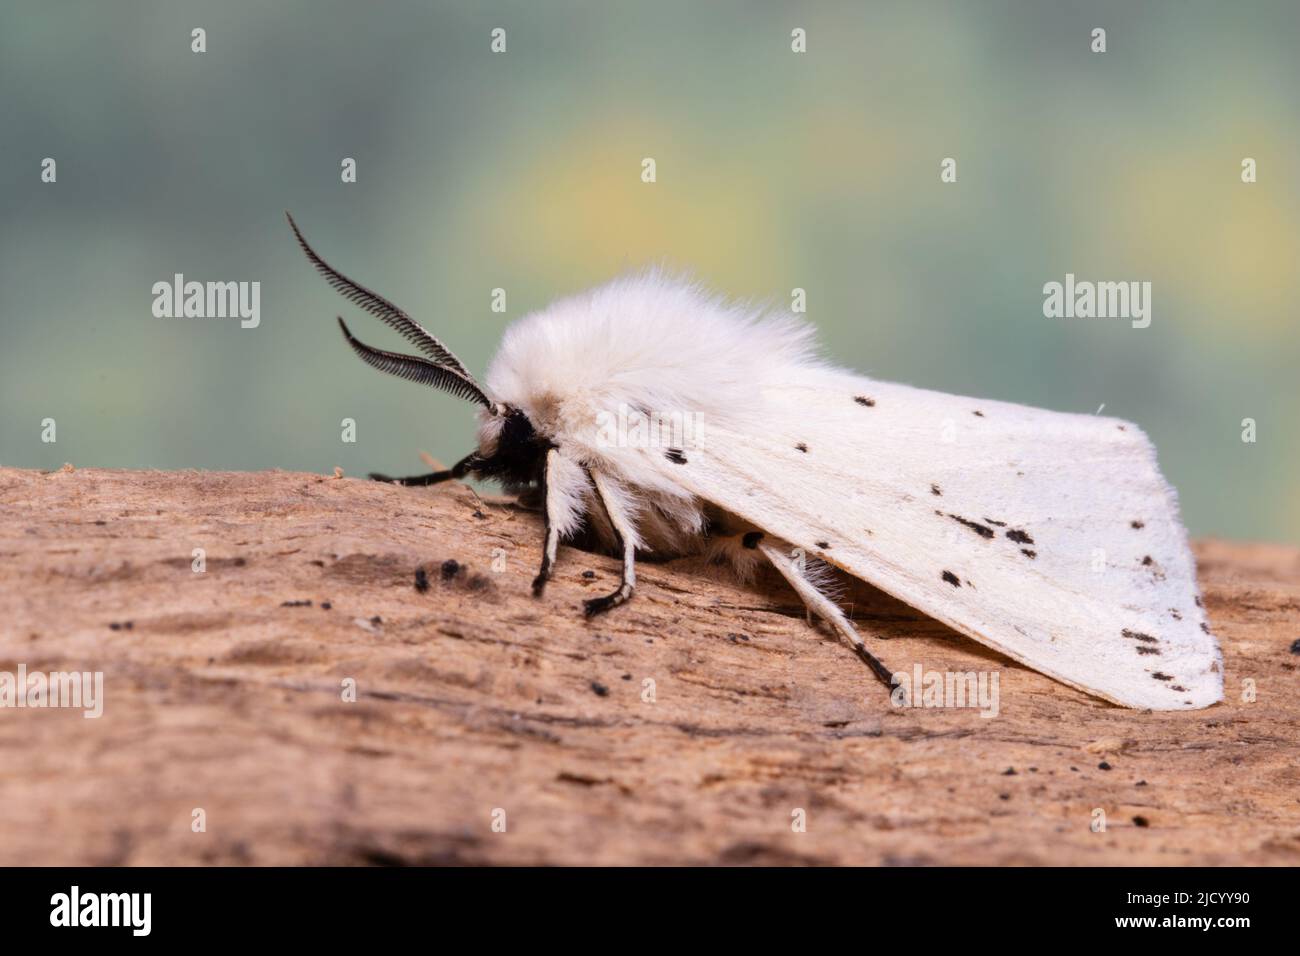 Une hermine blanche, Spilosoma lubricipeda, reposant sur une bûche pourrie. Banque D'Images